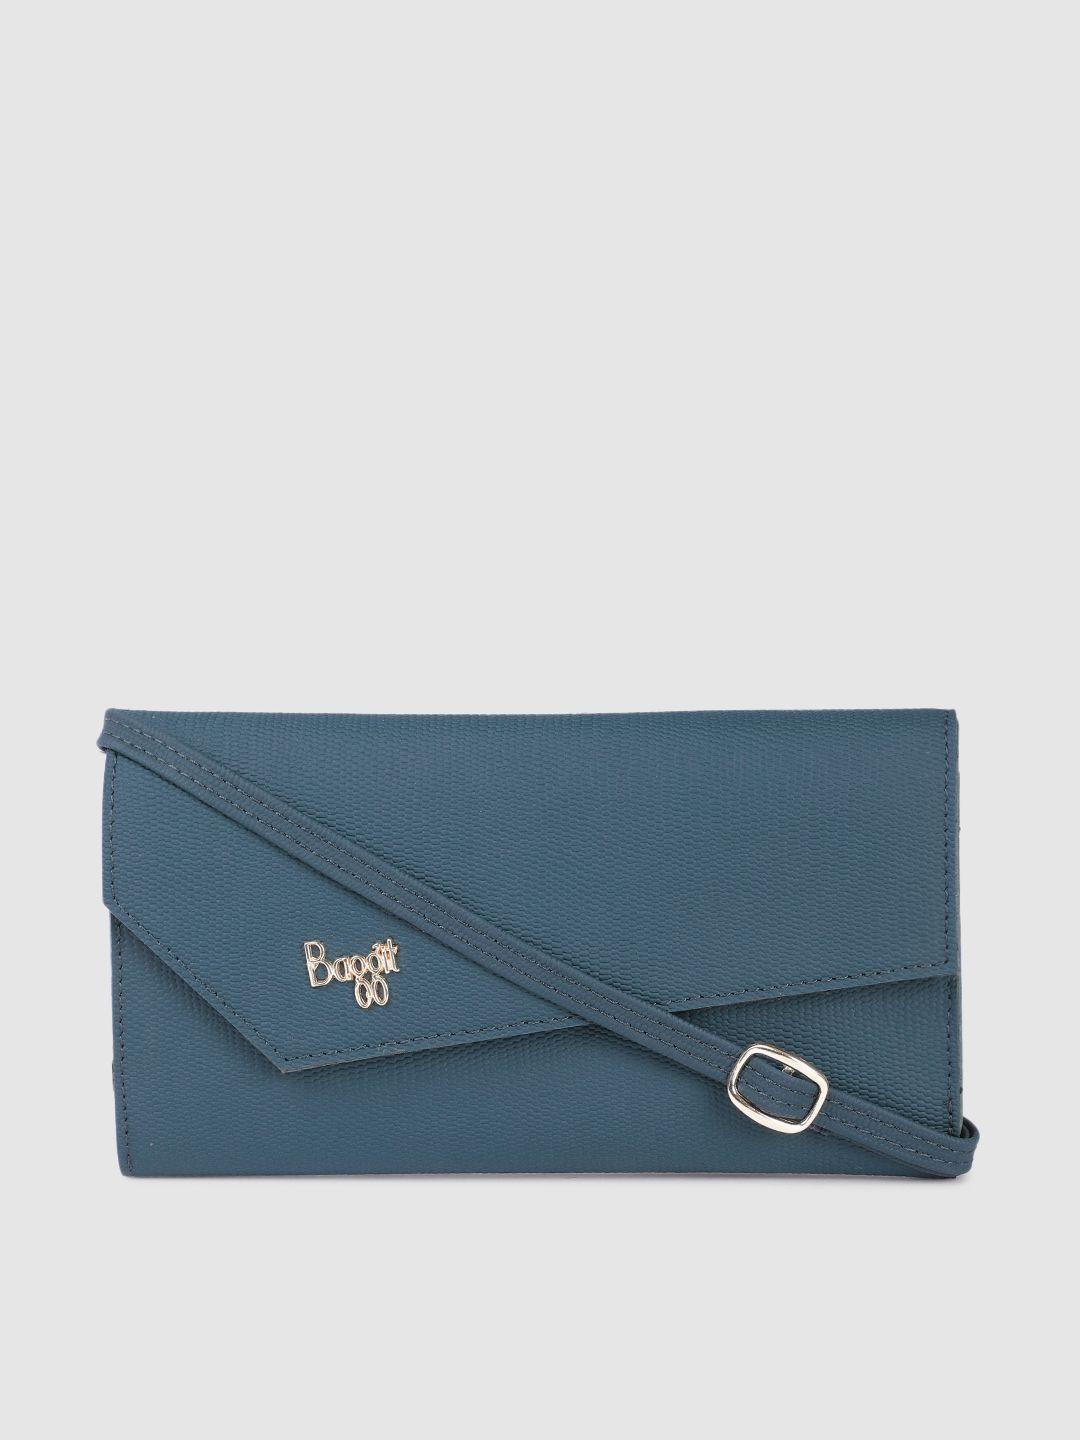 baggit women animal textured pu envelope wallet with sling strap